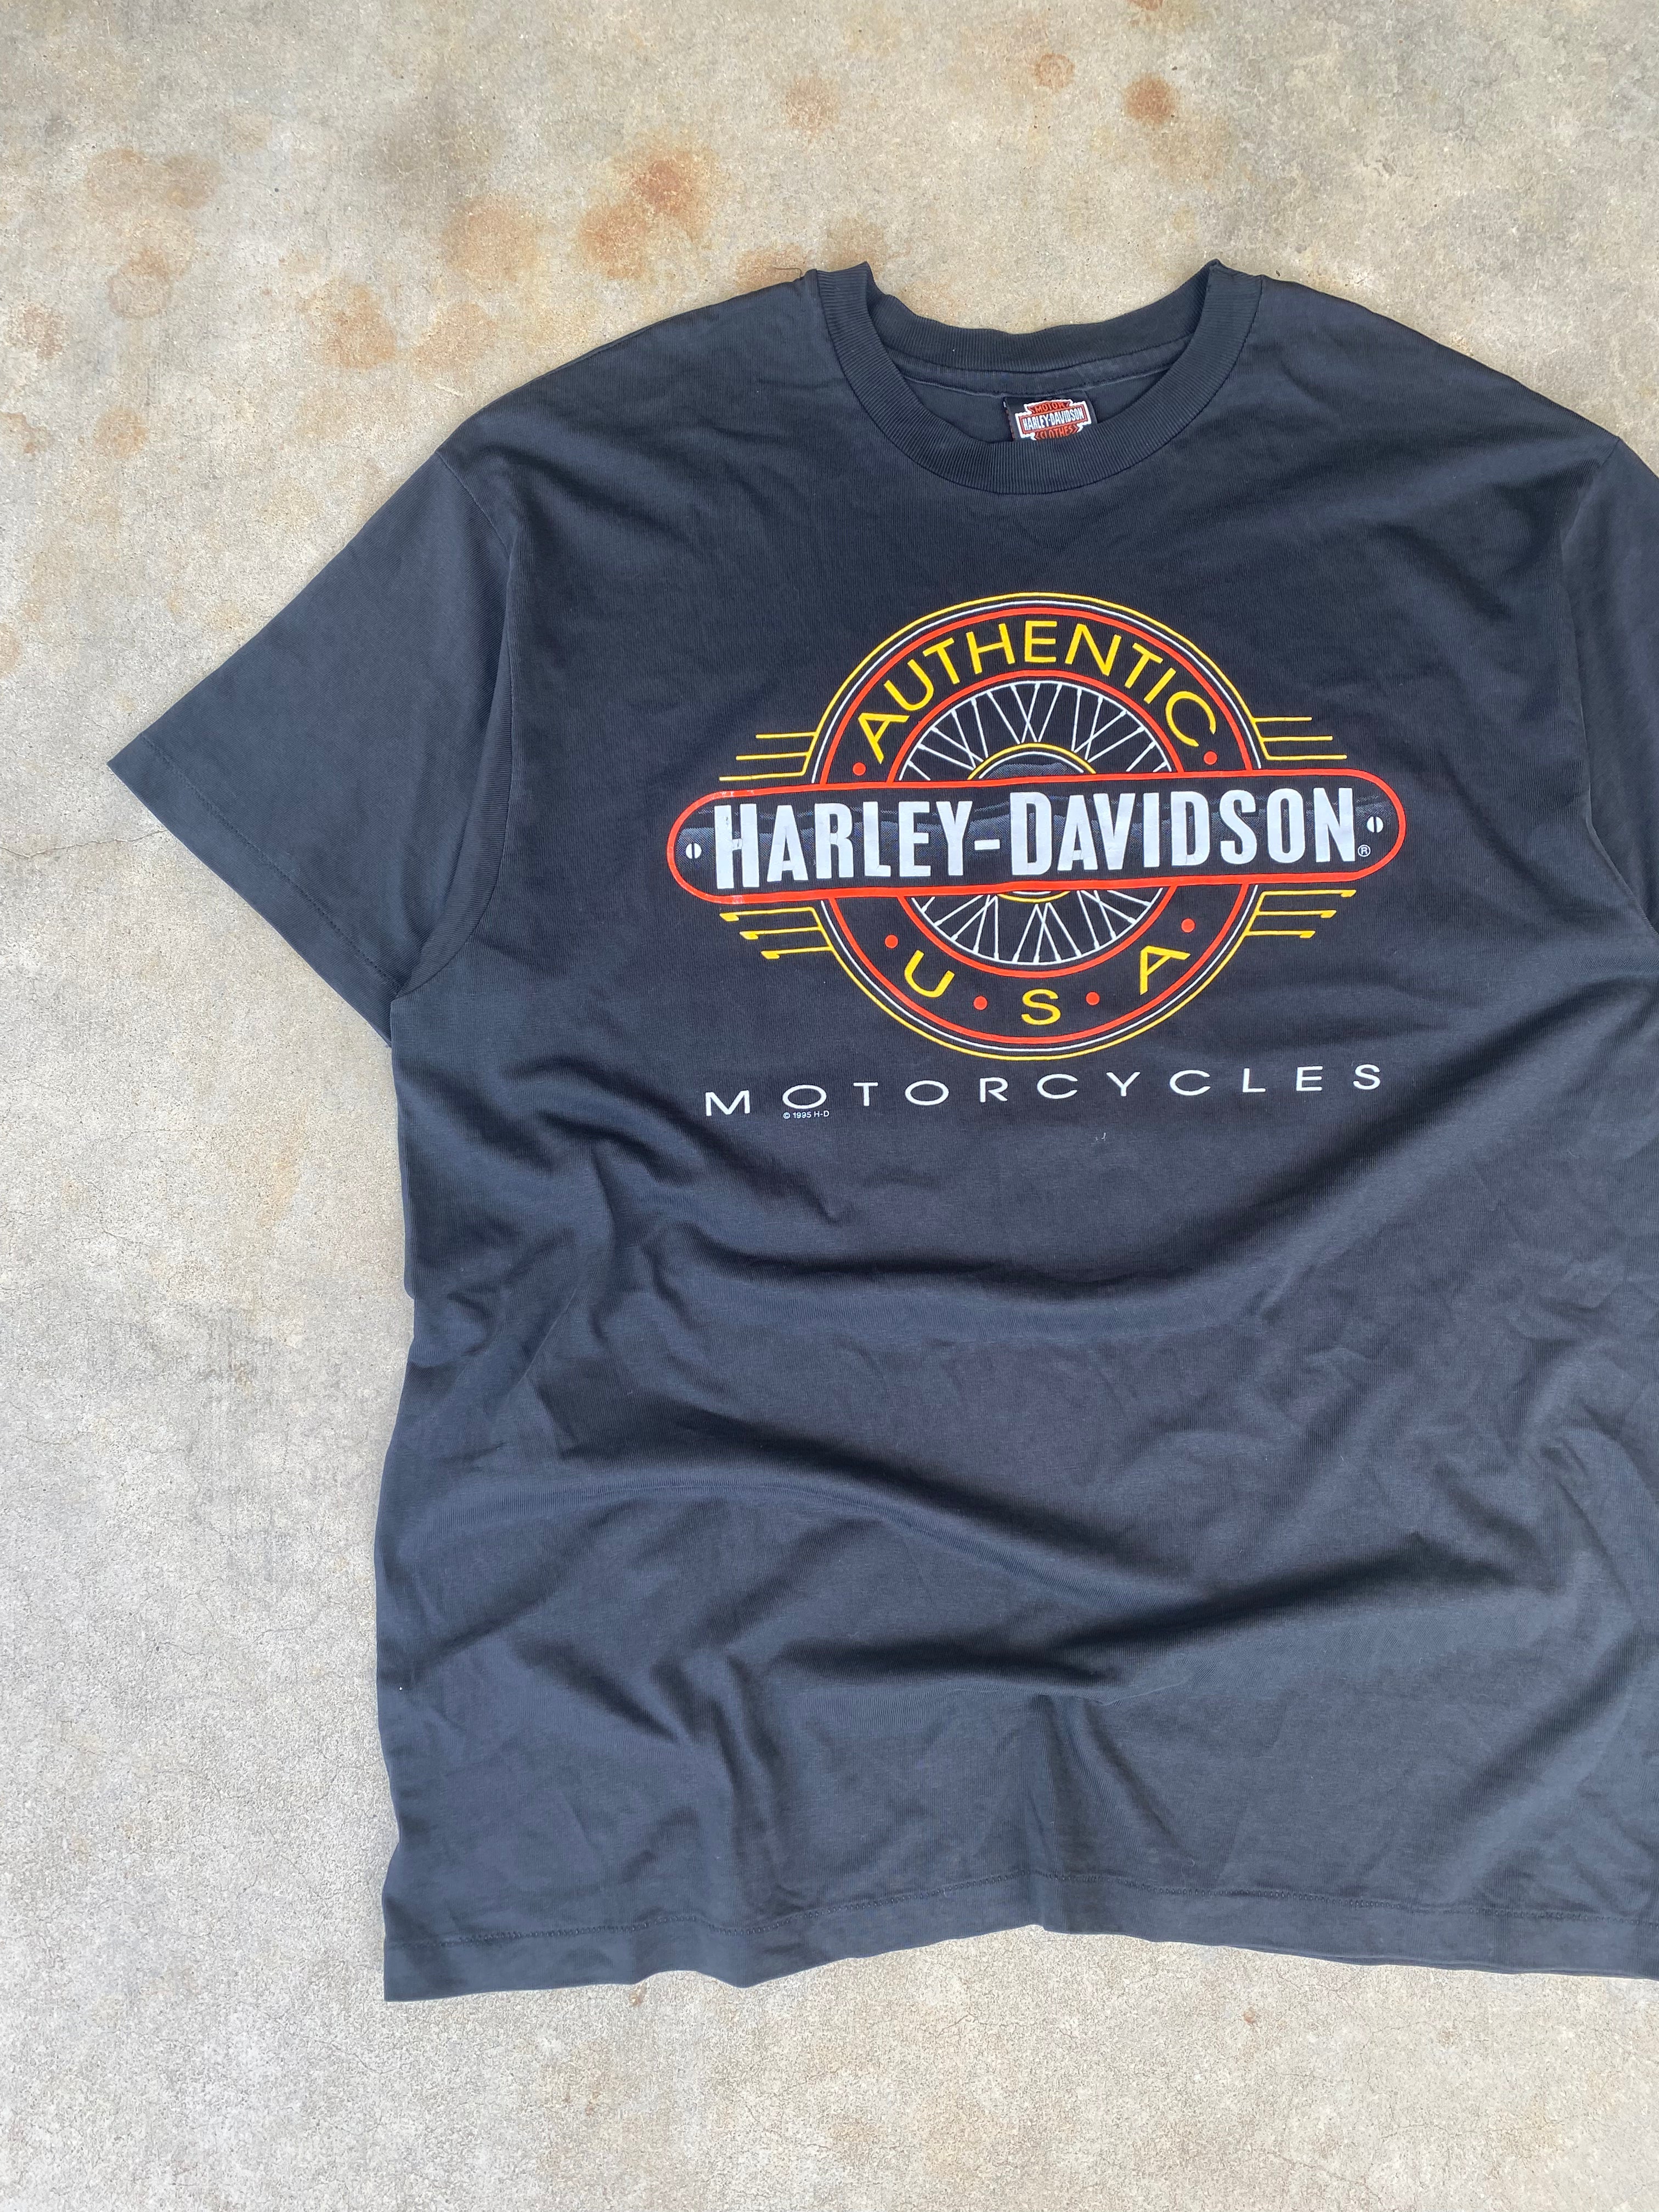 1995 Harley Davidson Motorcycles T-Shirt (XL)